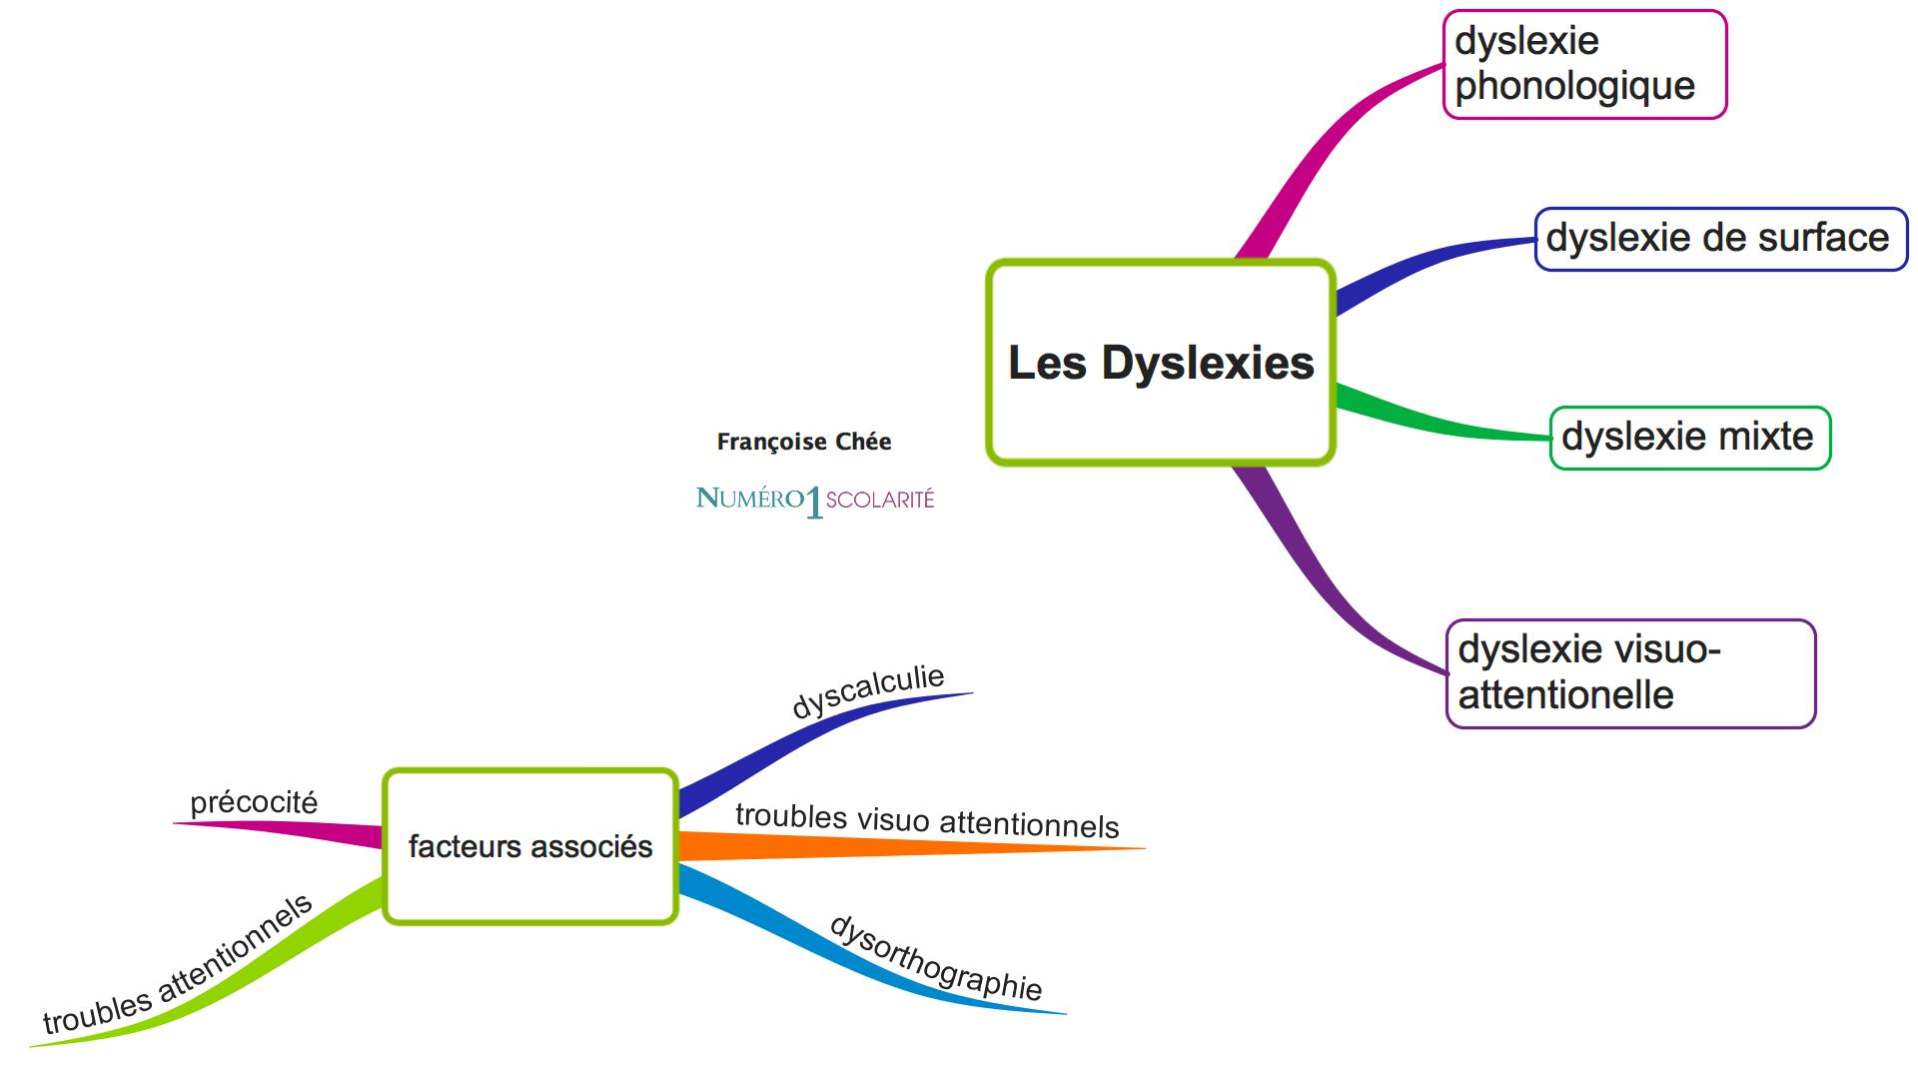 Dyslexie de surface : définition, diagnostic et traitement